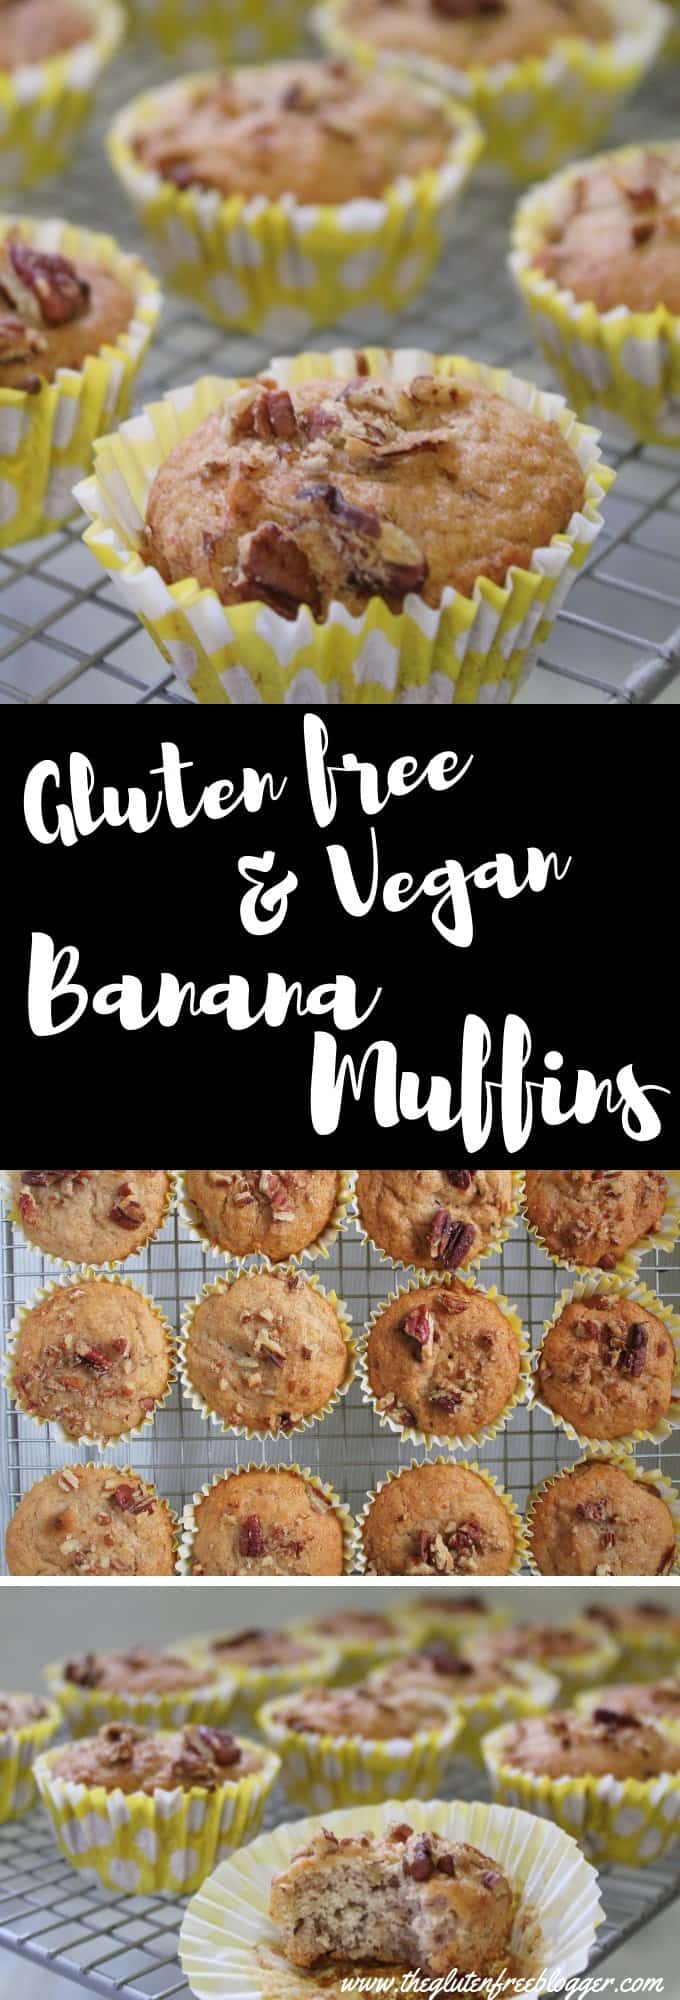 gluten free vegan banana muffins vegan recipe veganuary gluten free egg free dairy free cake